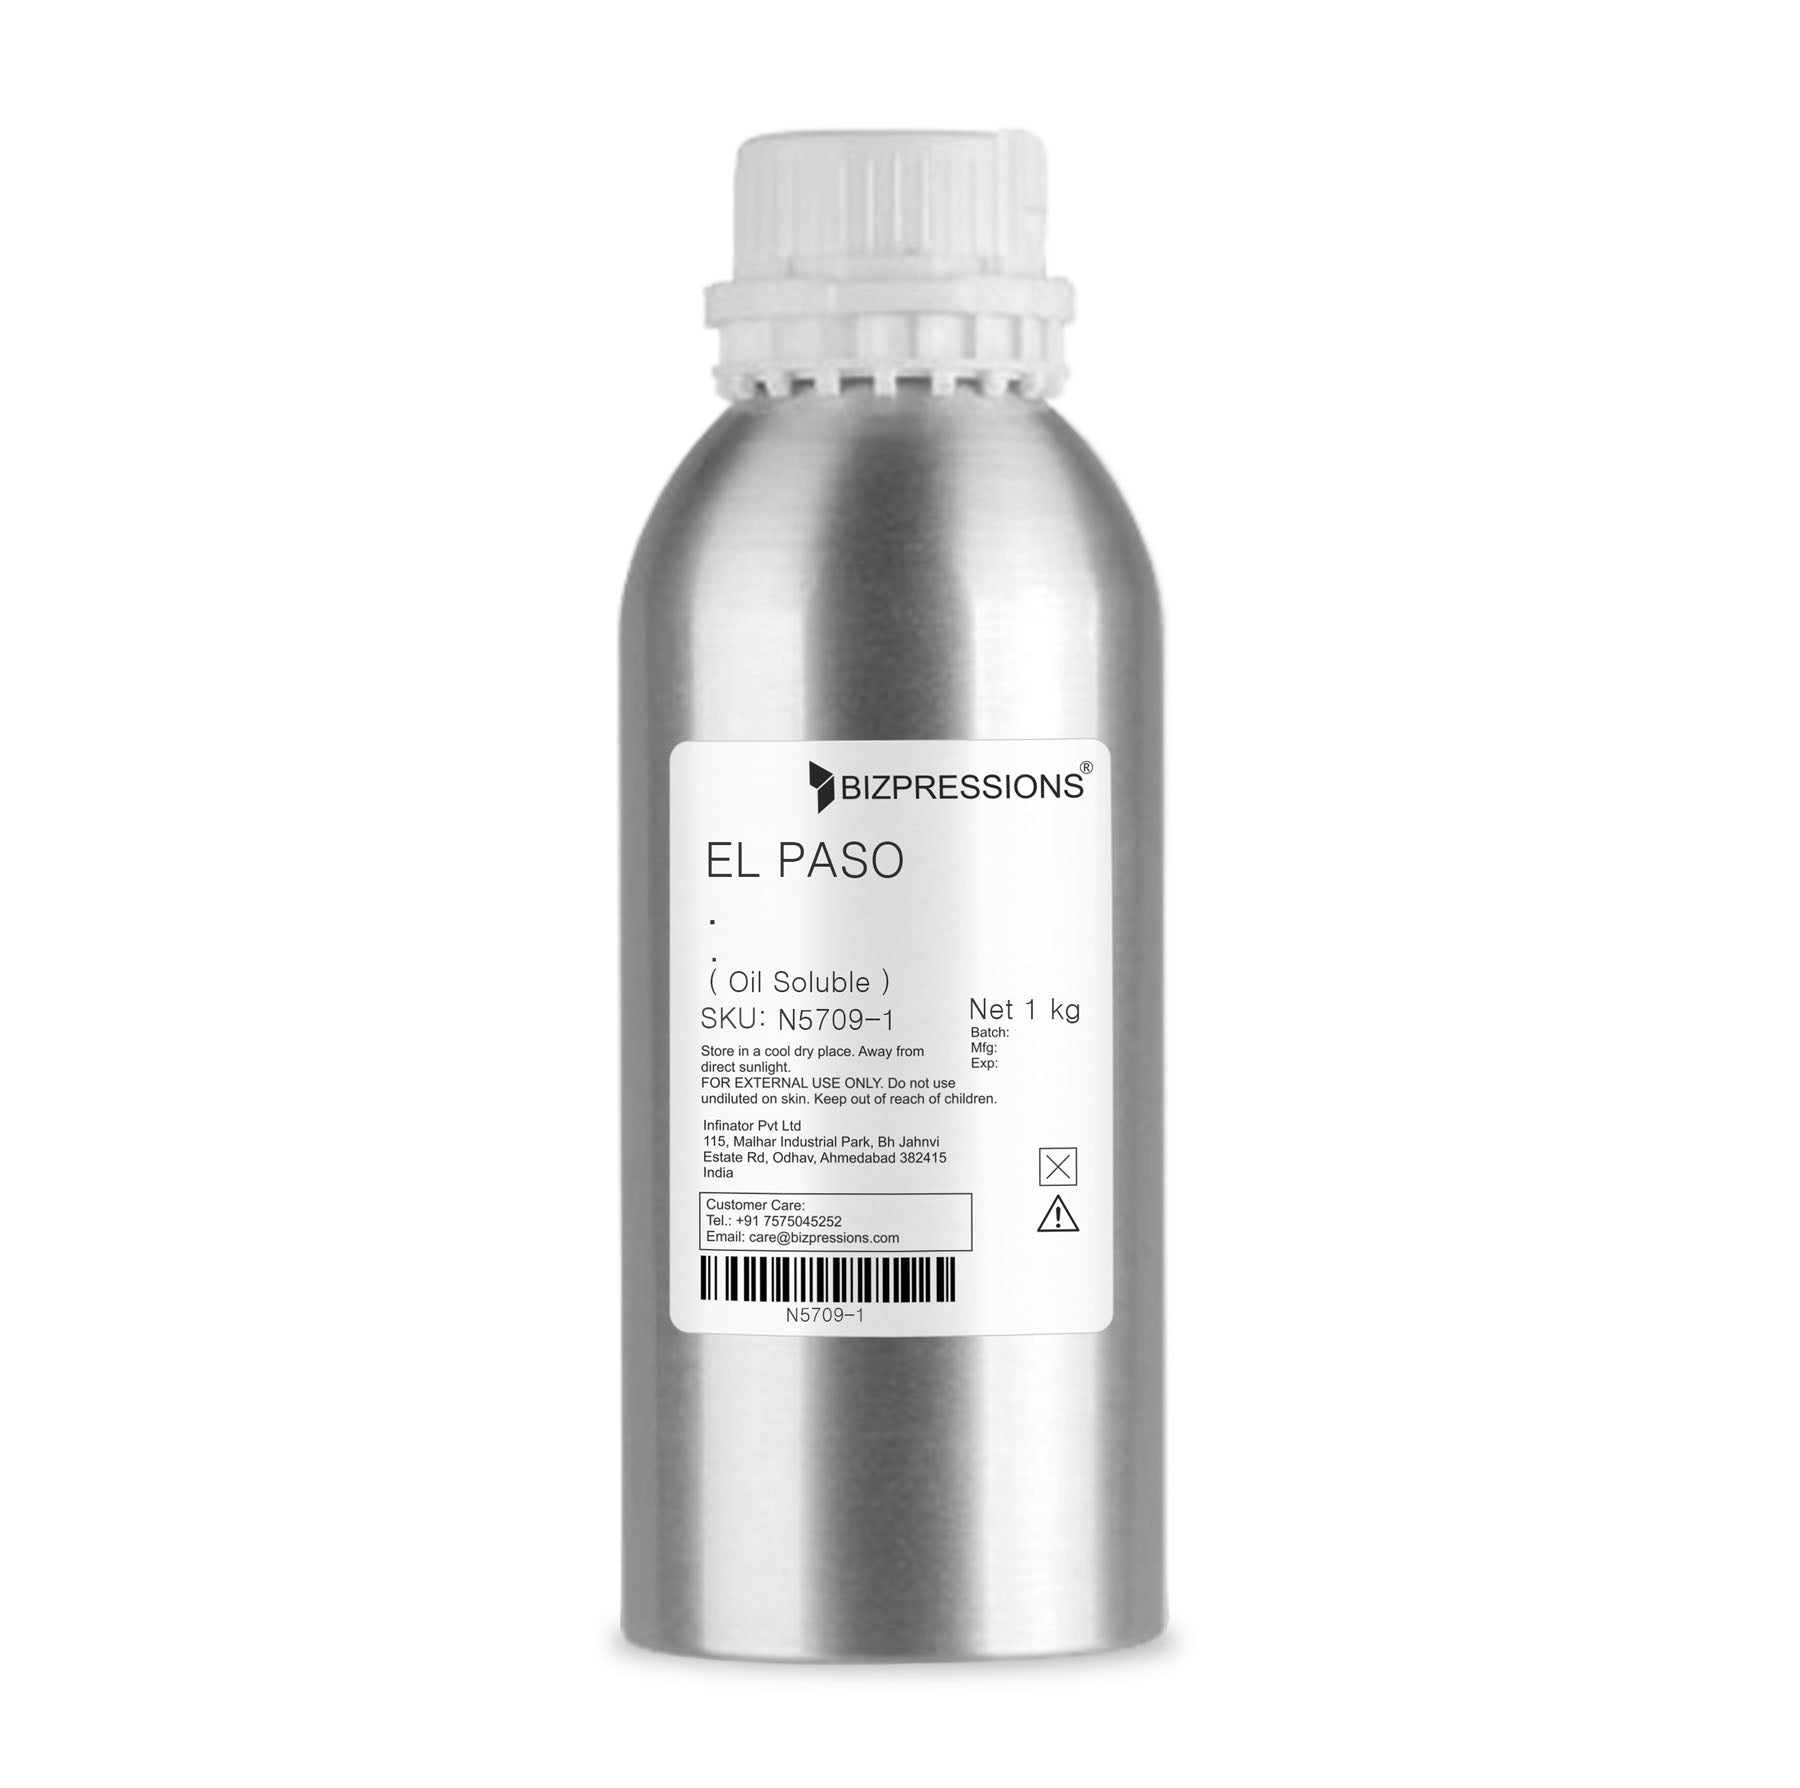 EL PASO - Fragrance ( Oil Soluble ) - 1 kg